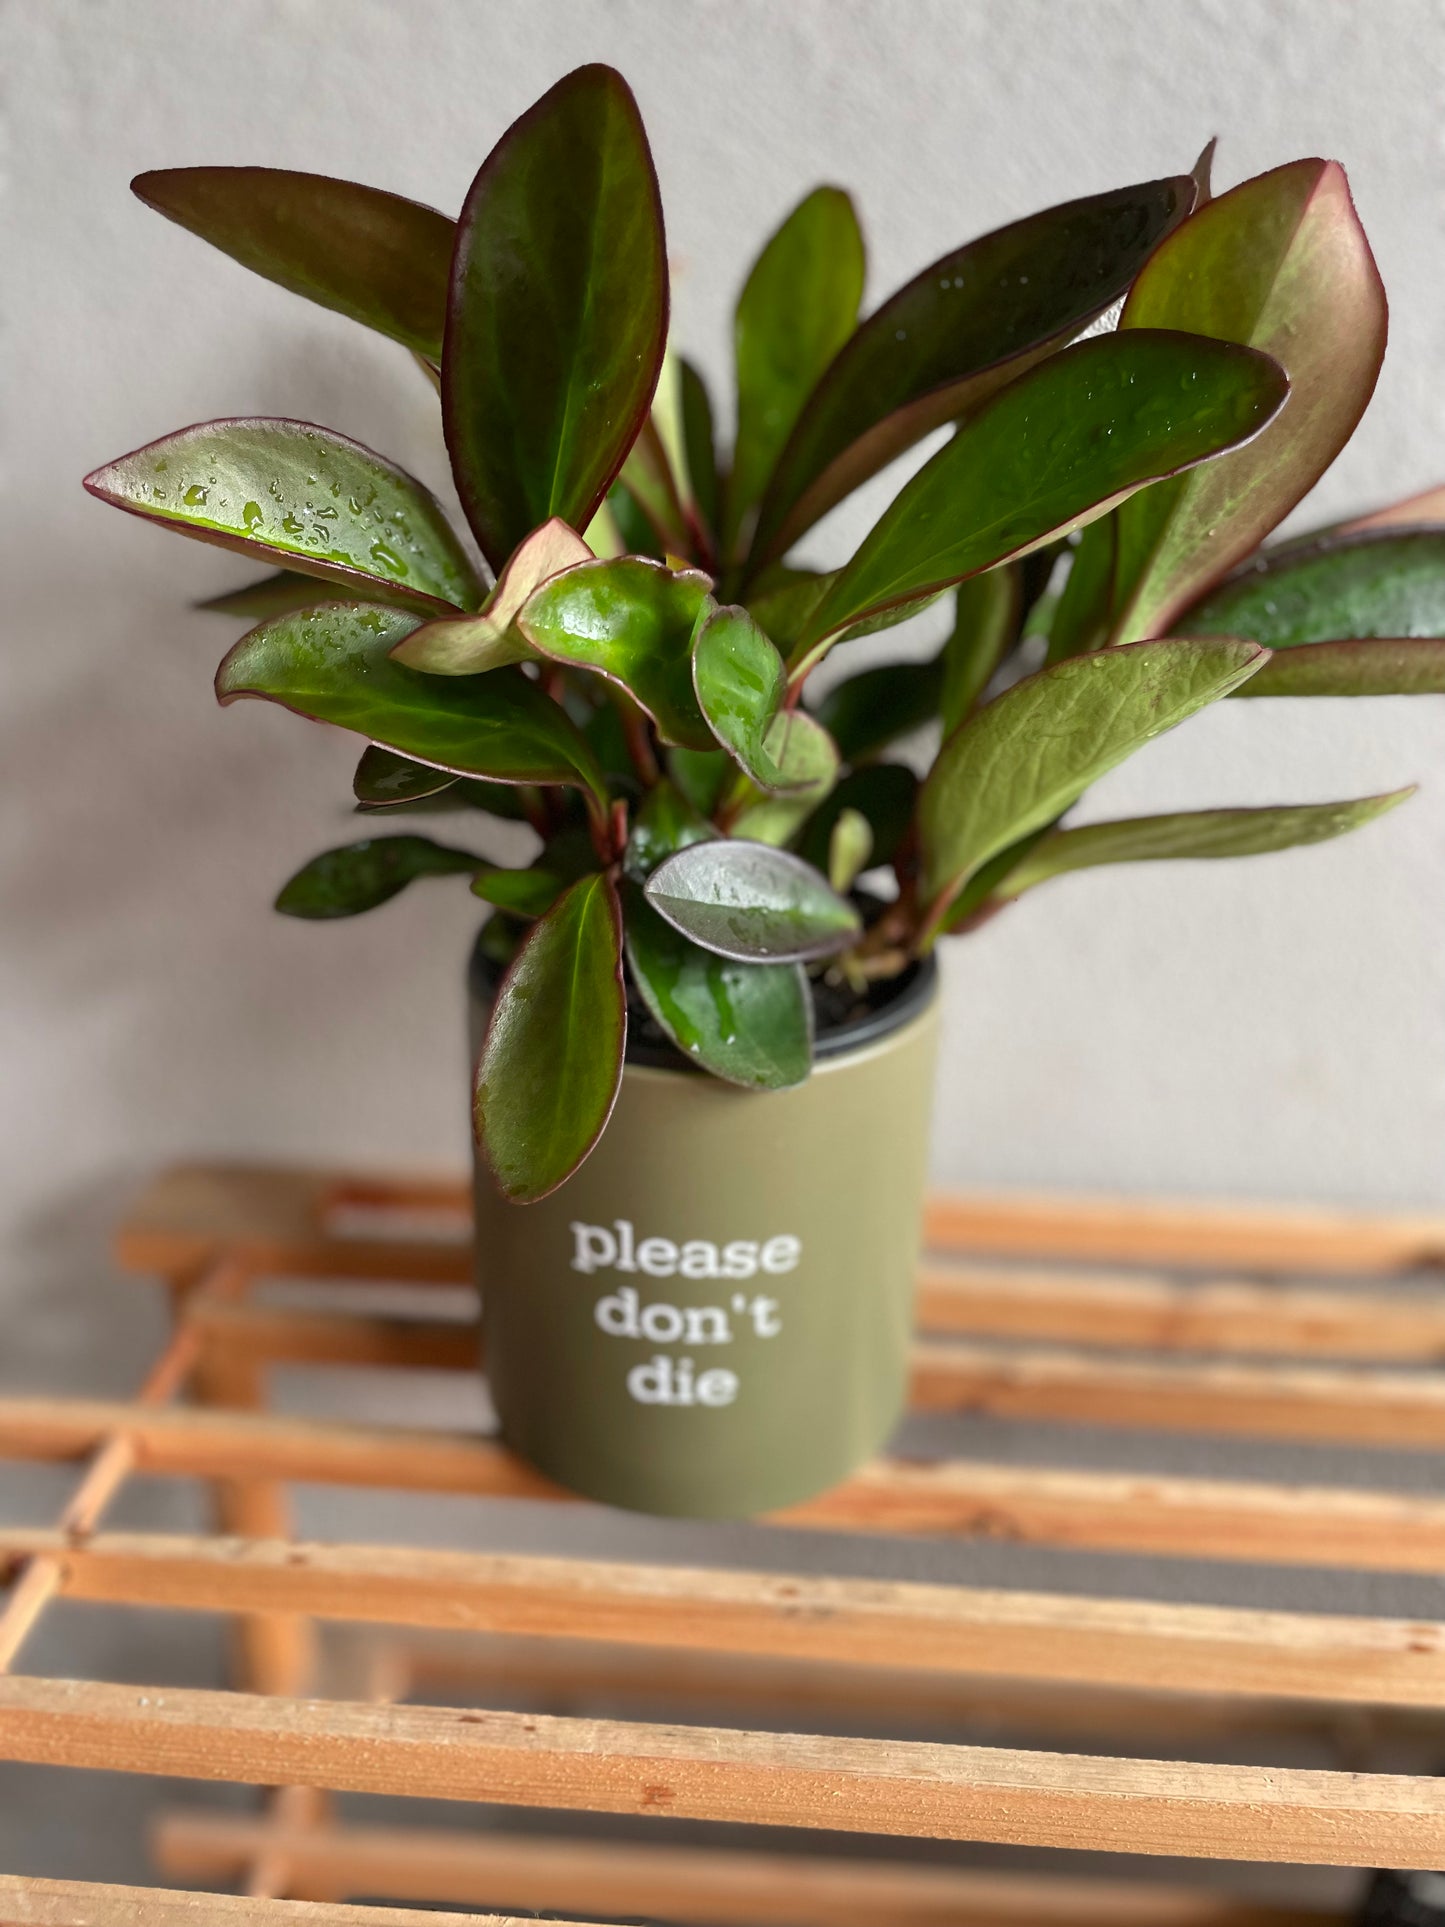 'I like plants more than people' Pun Pot